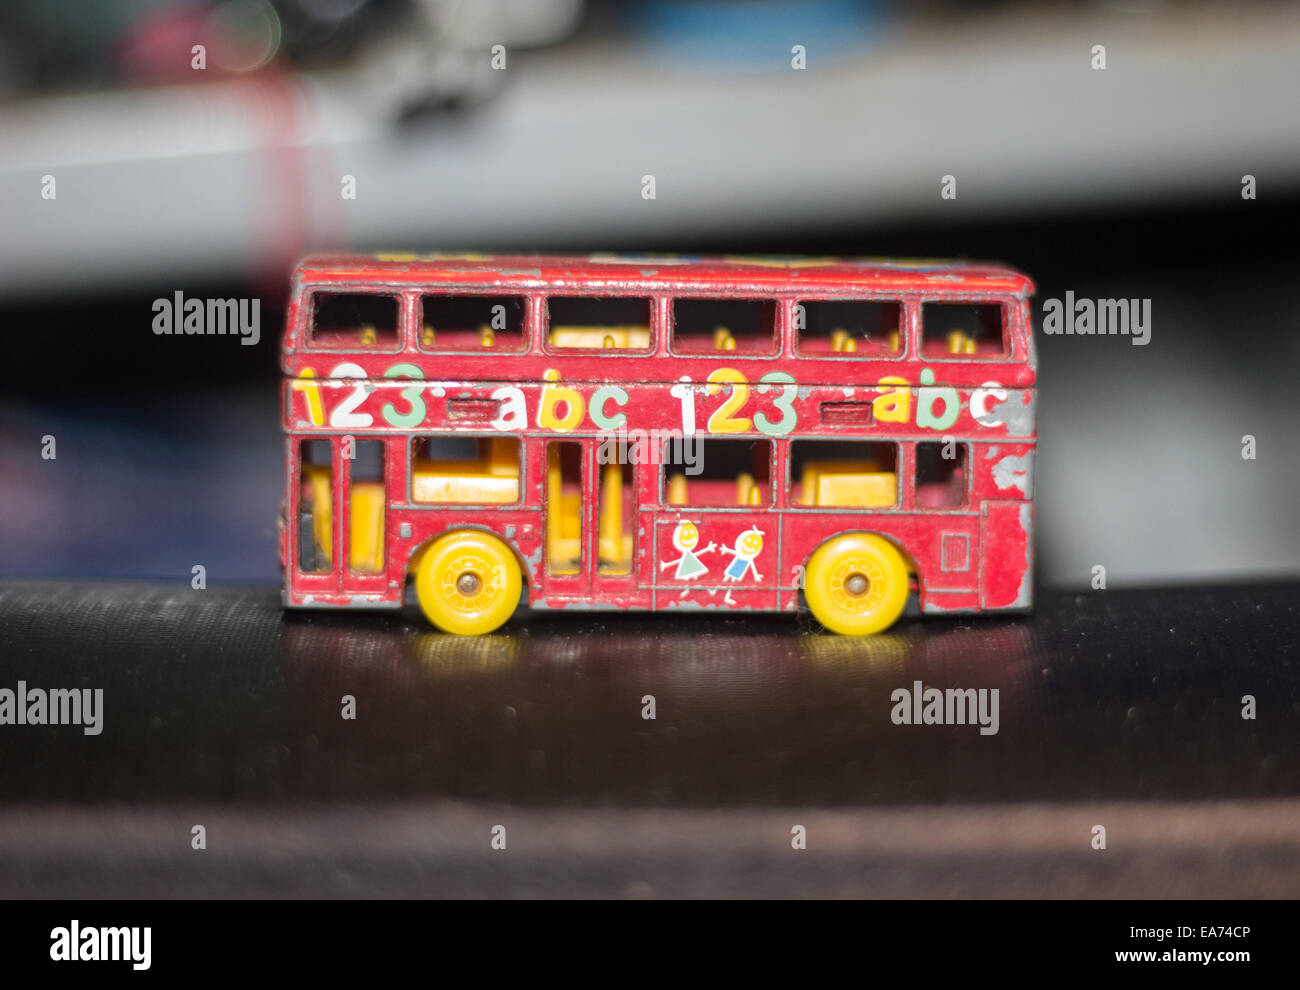 Ein roter Spielzeug-Modell-Bus mit 123 Abc auf der Seite mit gelben Rädern und keine Fenster in einer Garage gedruckt. Stockfoto